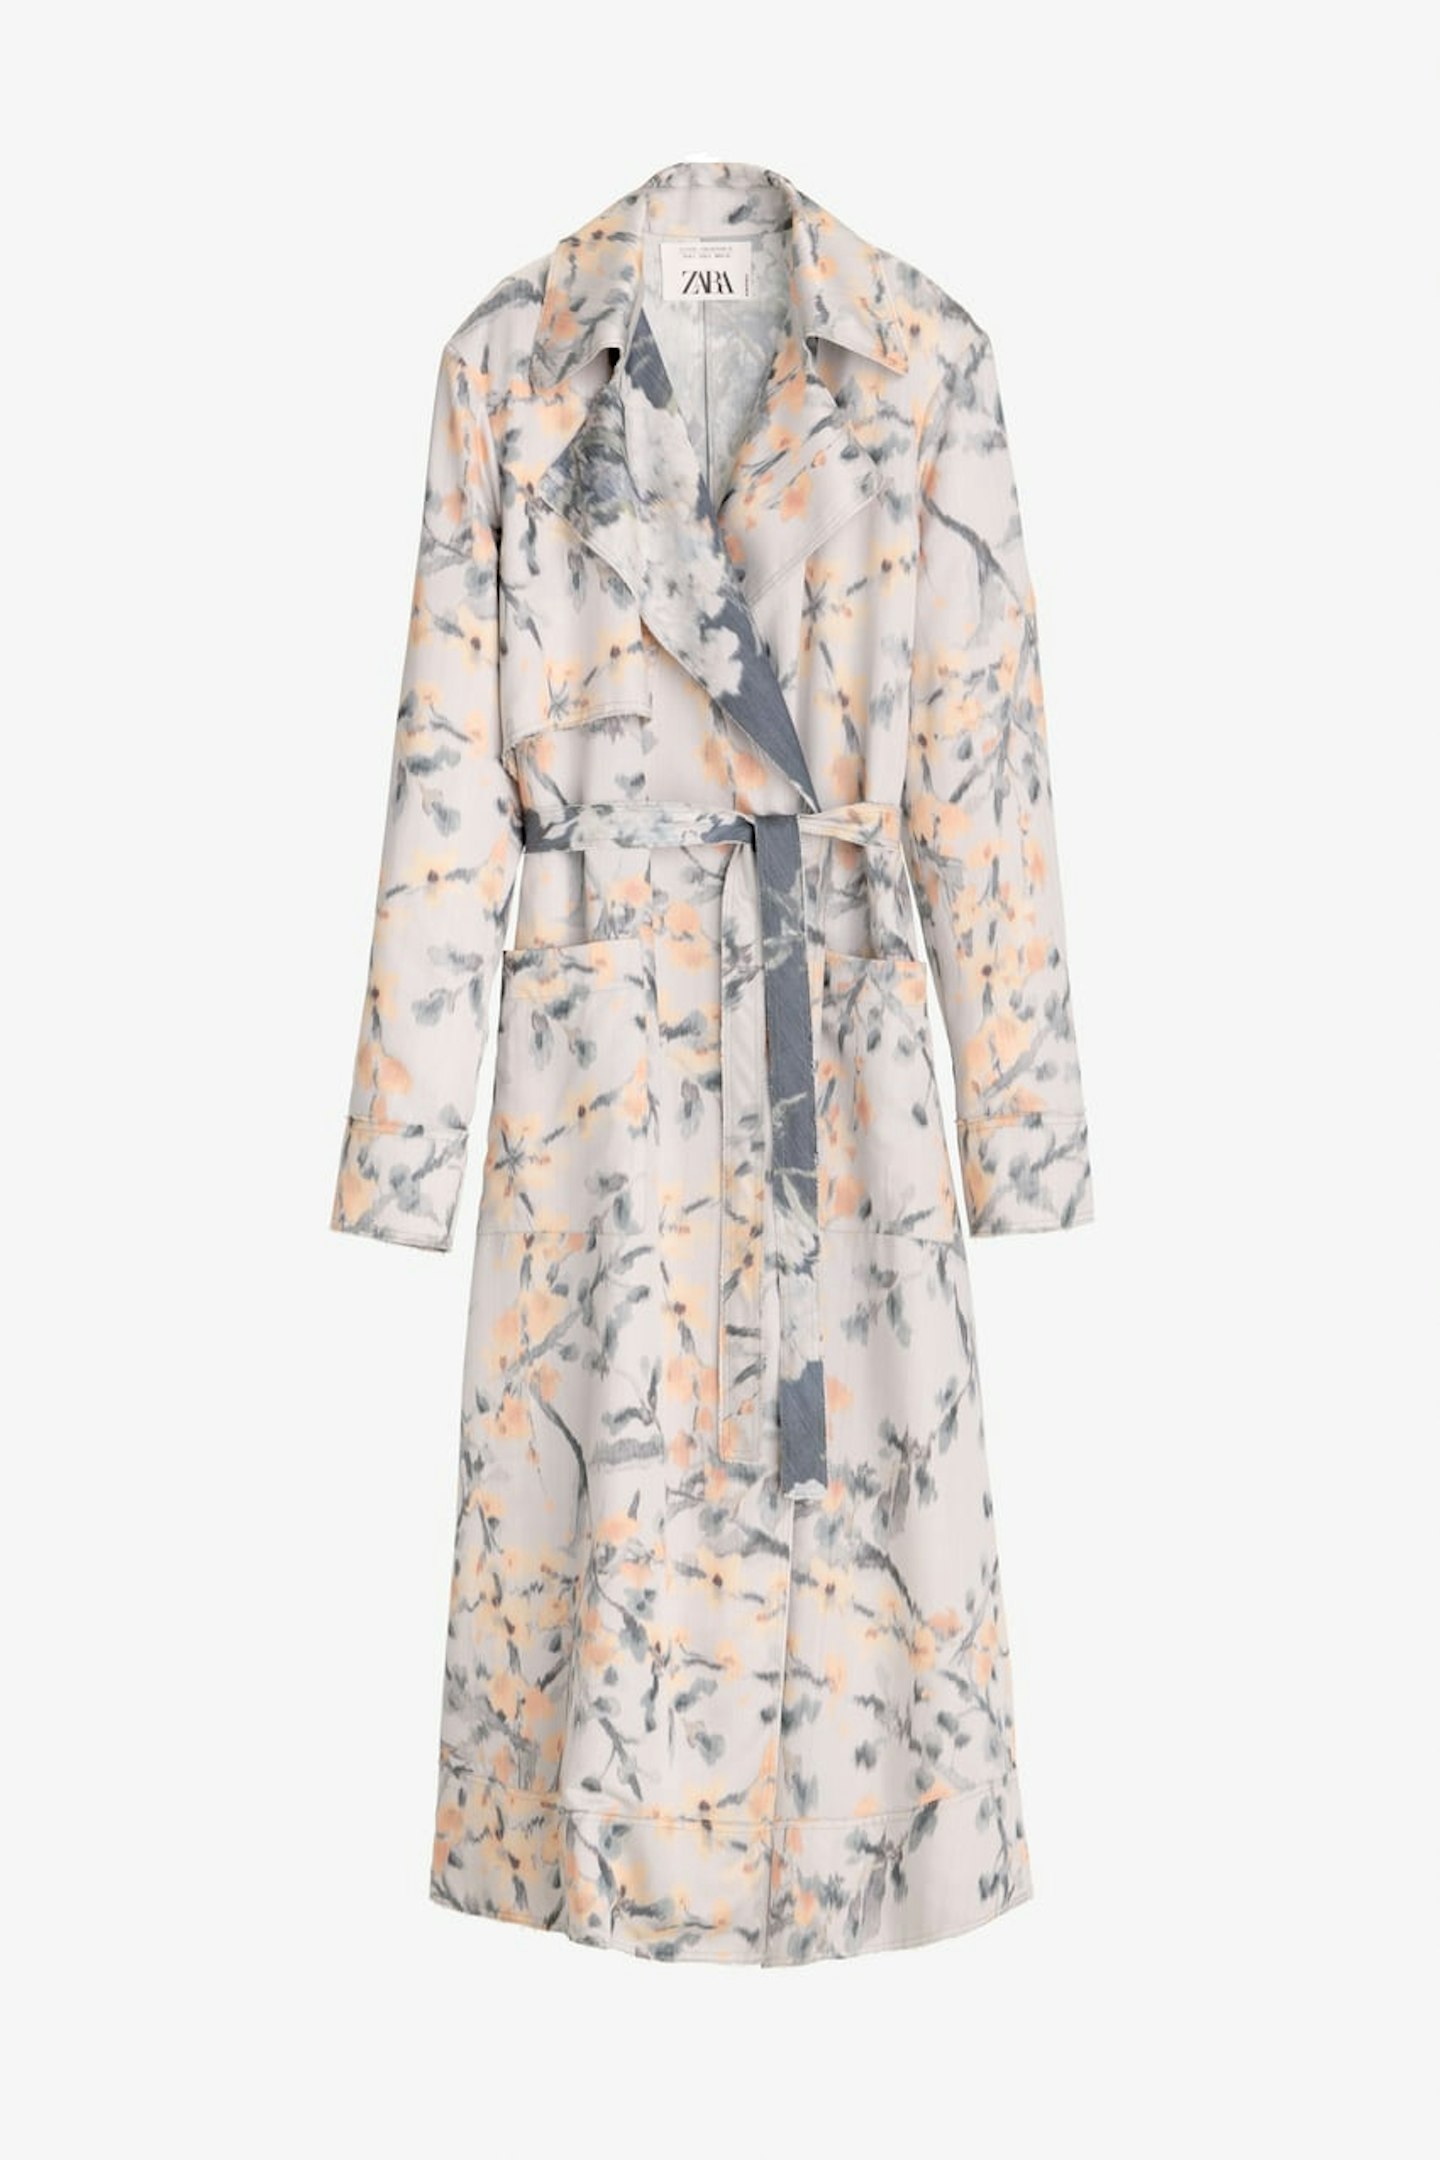 Zara, Printed Coat, £119